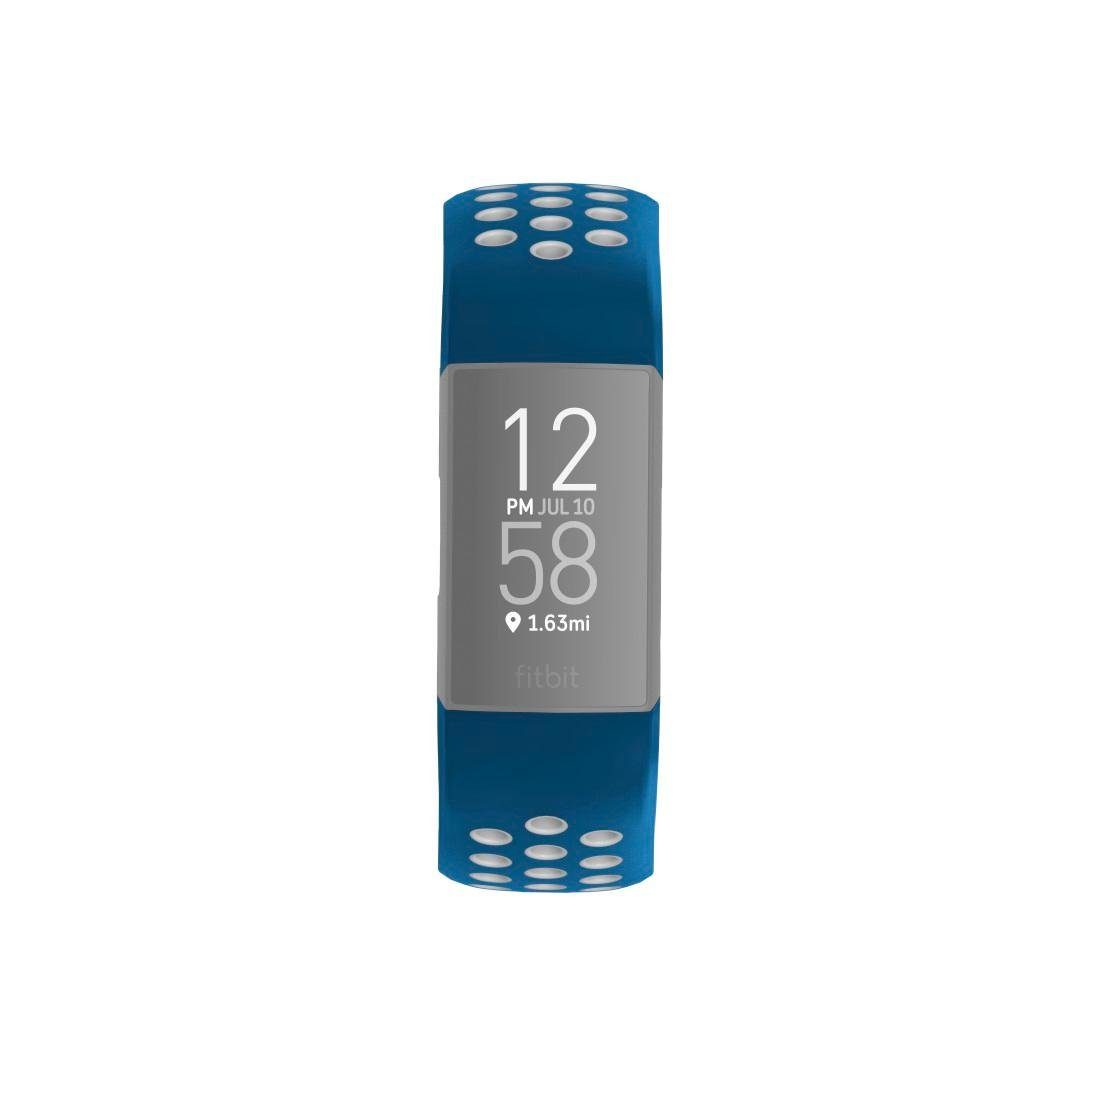 Abwaschbar Charge - Hama atmungsaktives 22mm, Rutschfest - blau Ersatzarmband Schmutzabweisend Sportarmband, Fitbit 3/4, Smartwatch-Armband